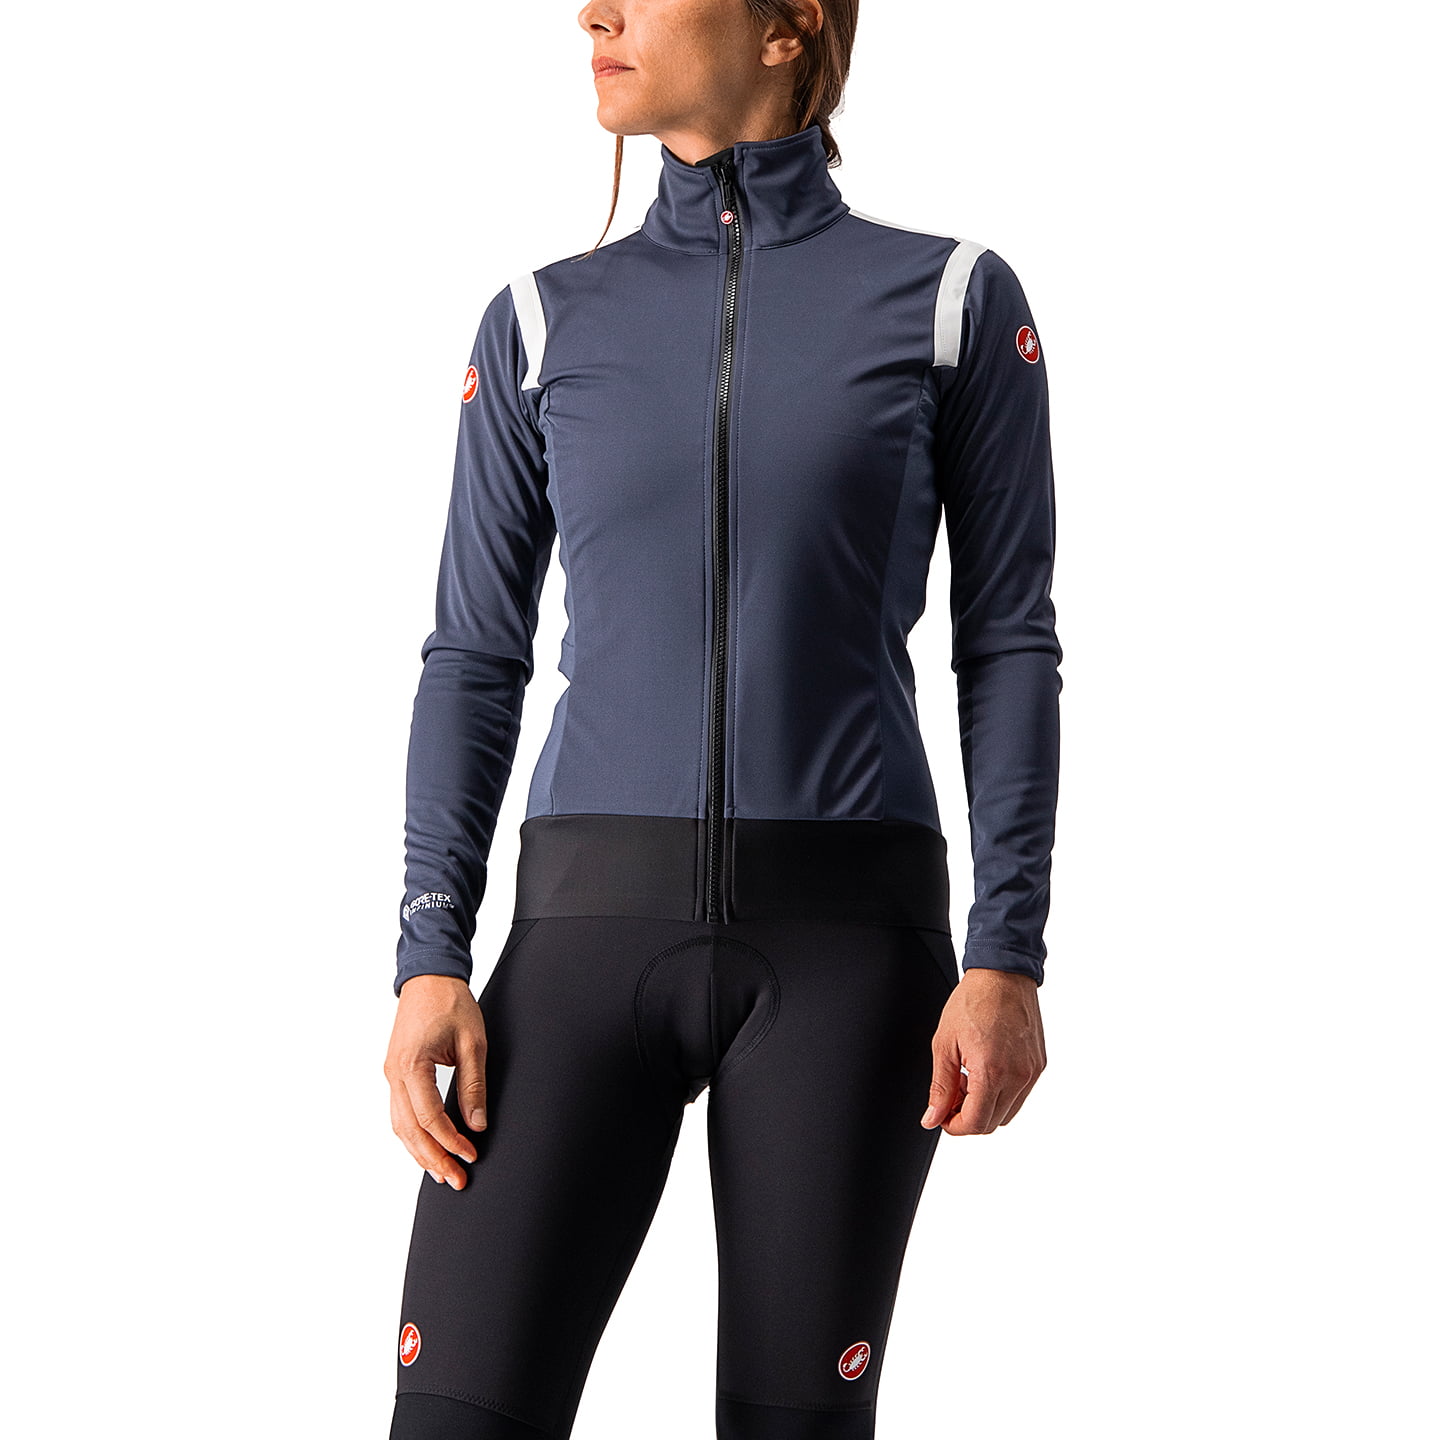 CASTELLI Alpha RoS 2 Women’s Light Jacket Light Jacket, size S, Cycle jacket, Cycle clothing